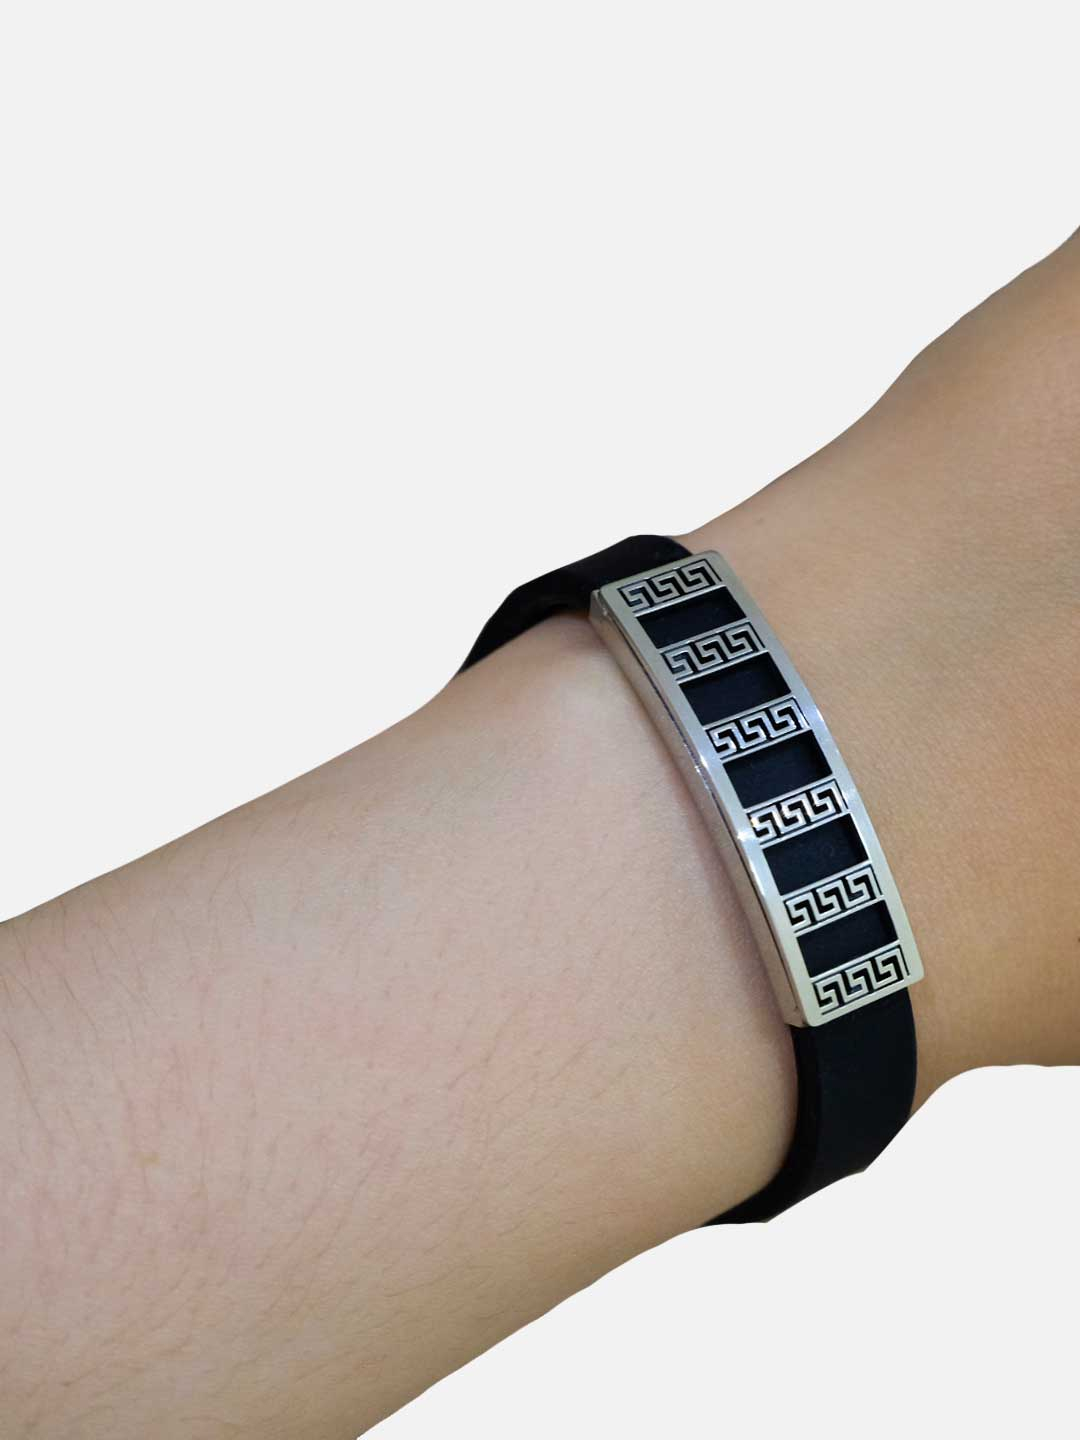 Каучуковый браслет унисекс ручной работы купить по цене 280 ₽ винтернет-магазине KazanExpress